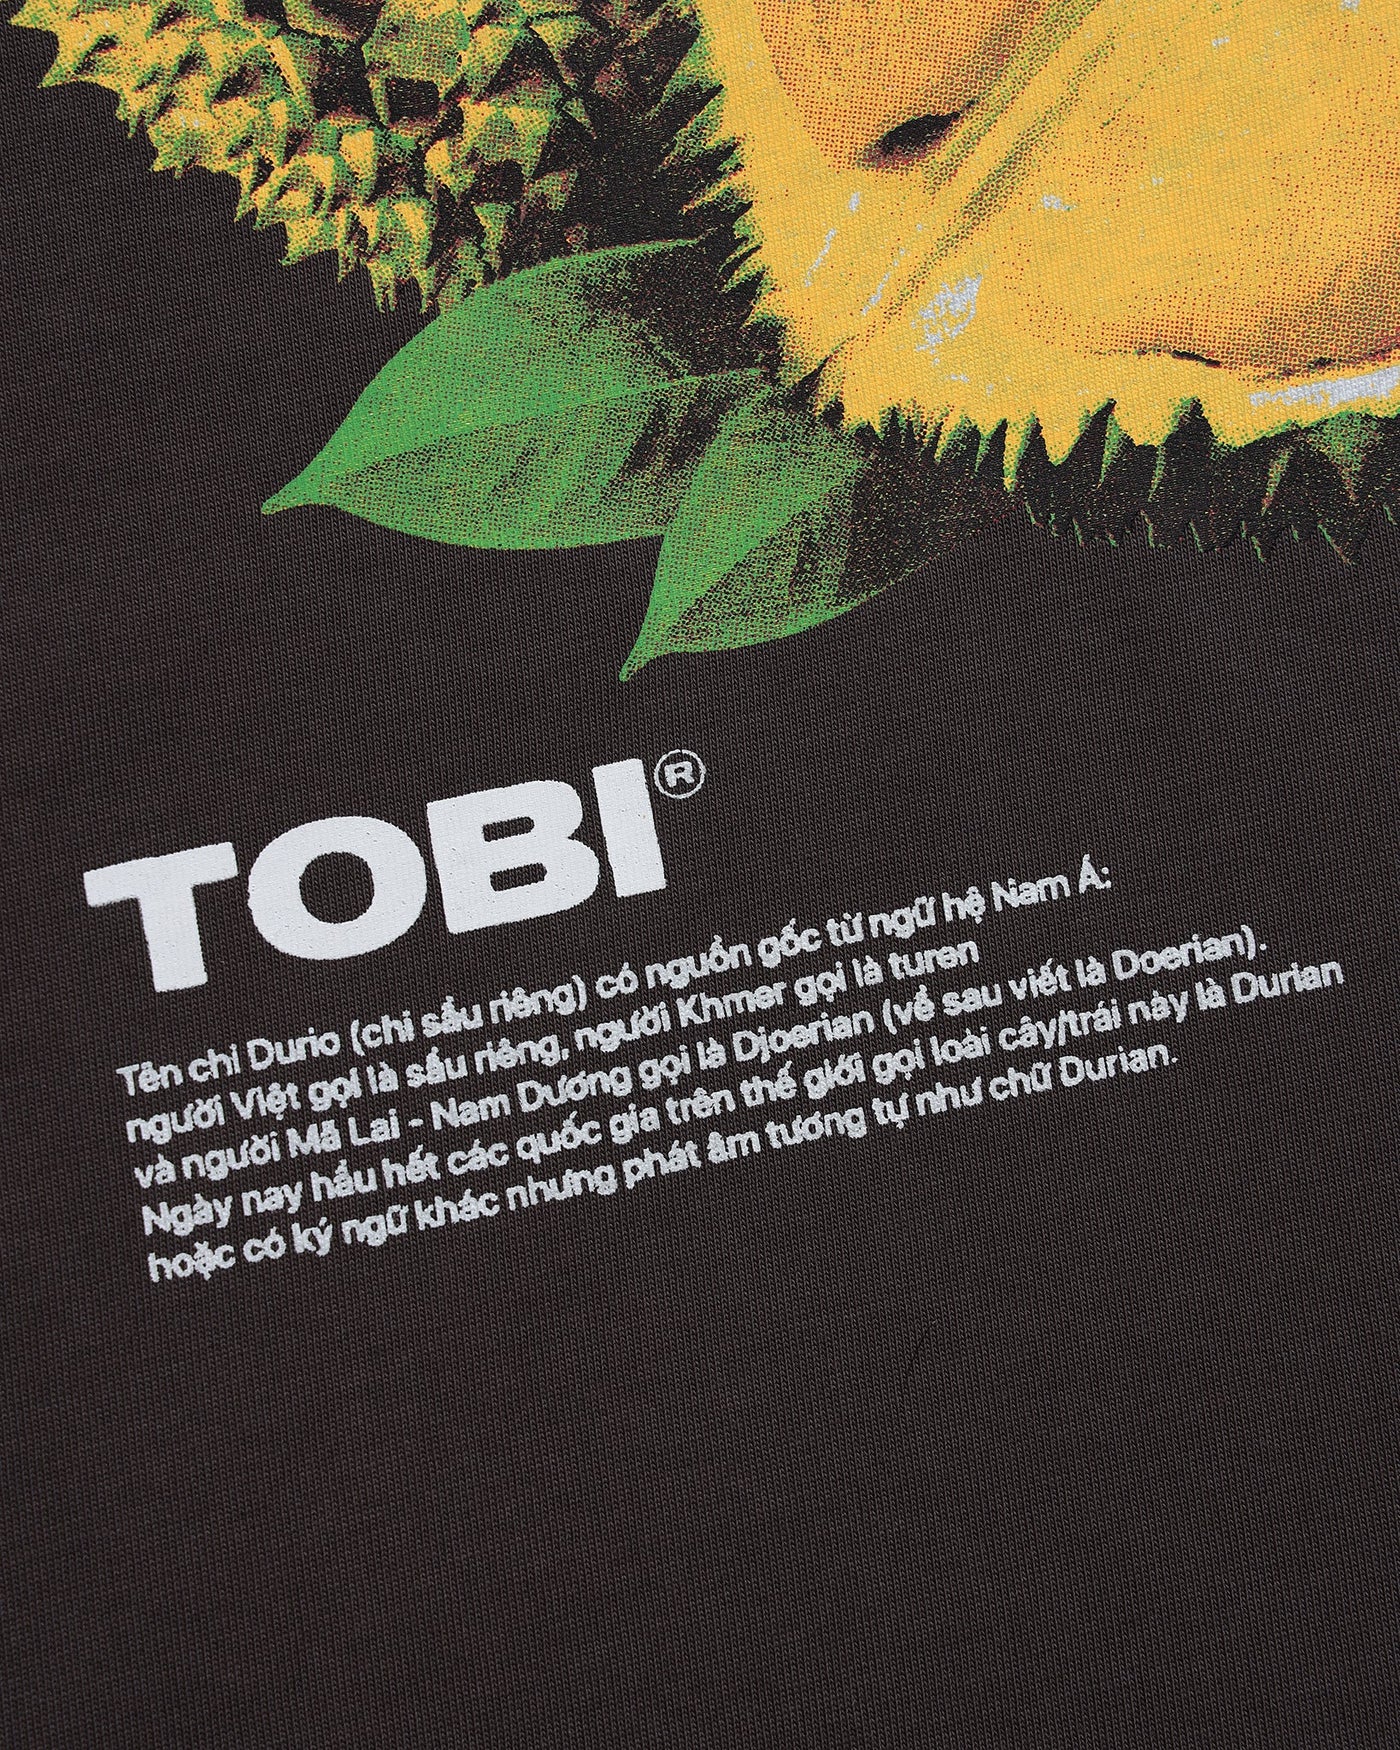 TOBI SauRieng T-shirt - TOBI